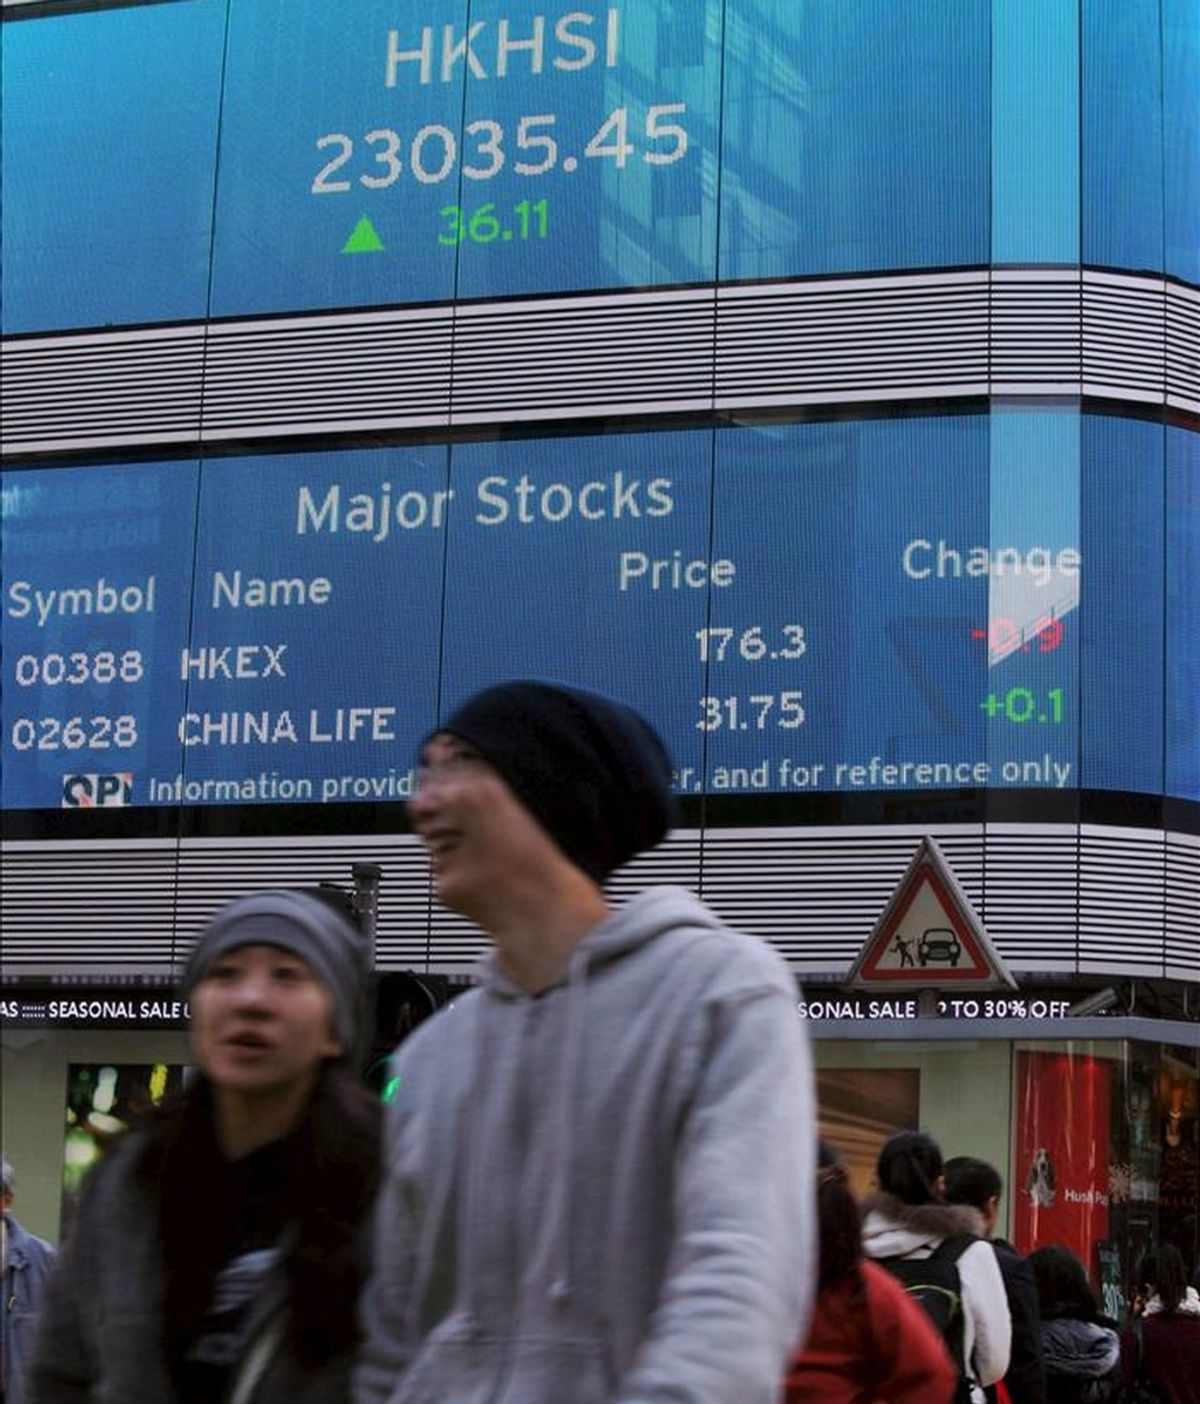 Peatones cruzan una calle en la que se ve una pantalla con información económica en un banco en Hong Kong (China). El mercado bursátil de Hong Kong abrió con una subida de 24,64 puntos en el índice Hang Seng. EFE/Archivo